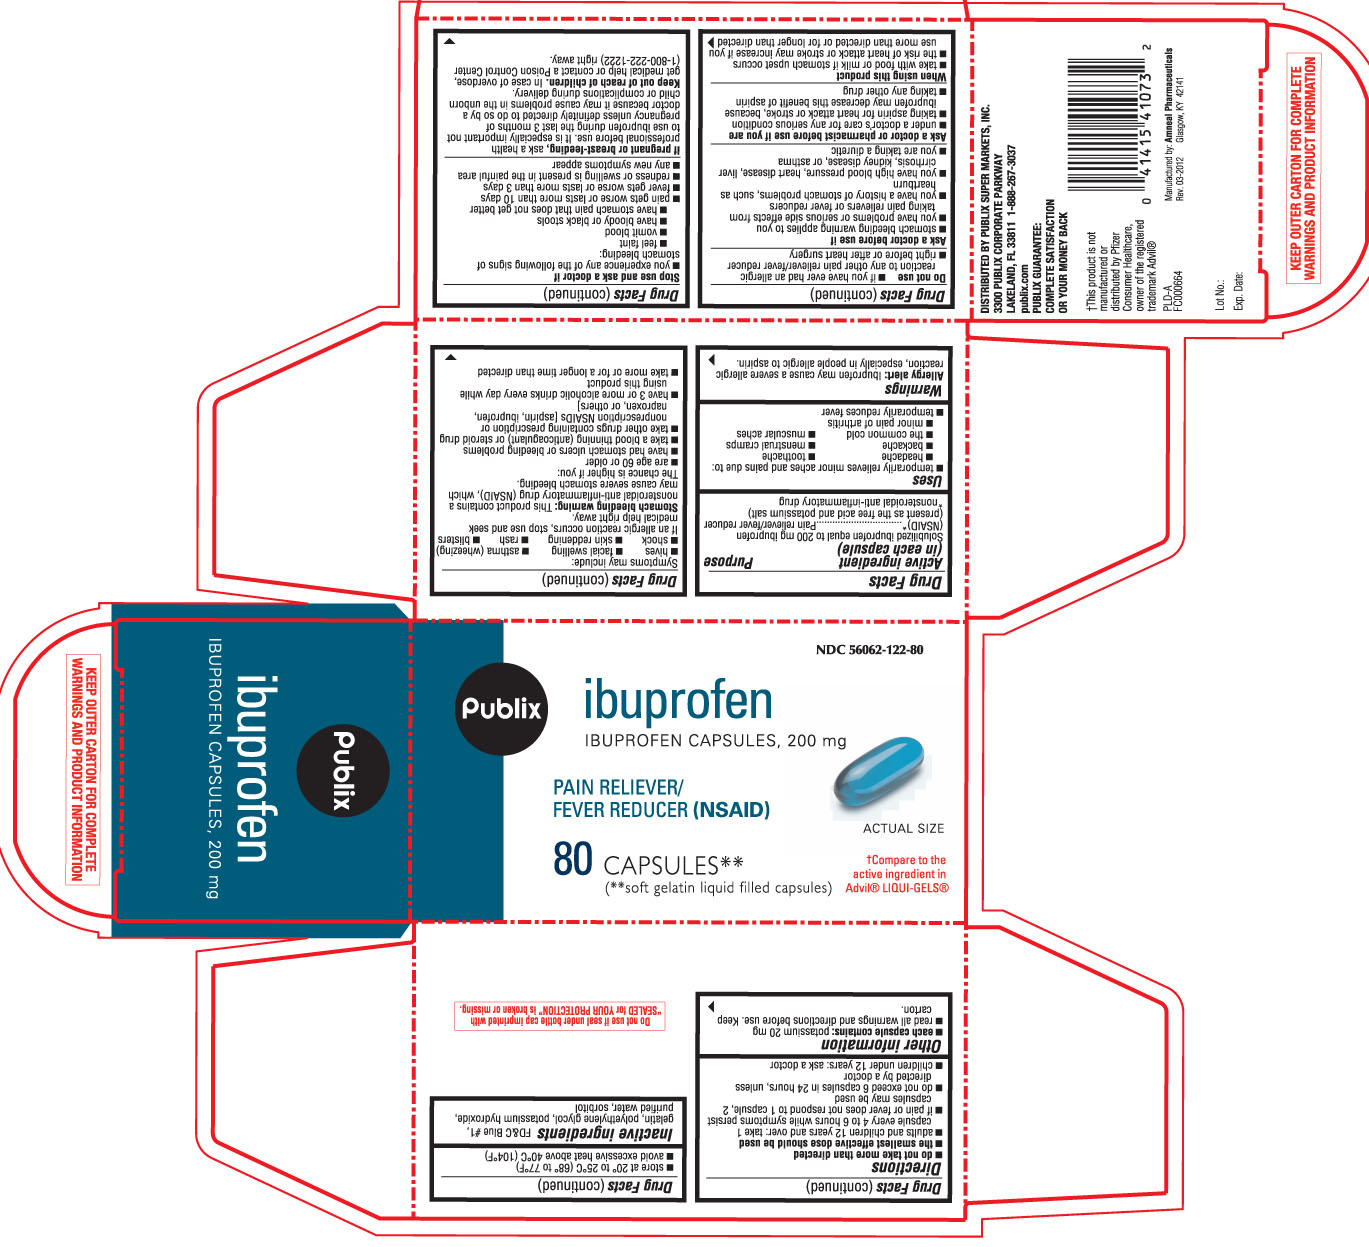 publix ibuprofen capsules 80 count